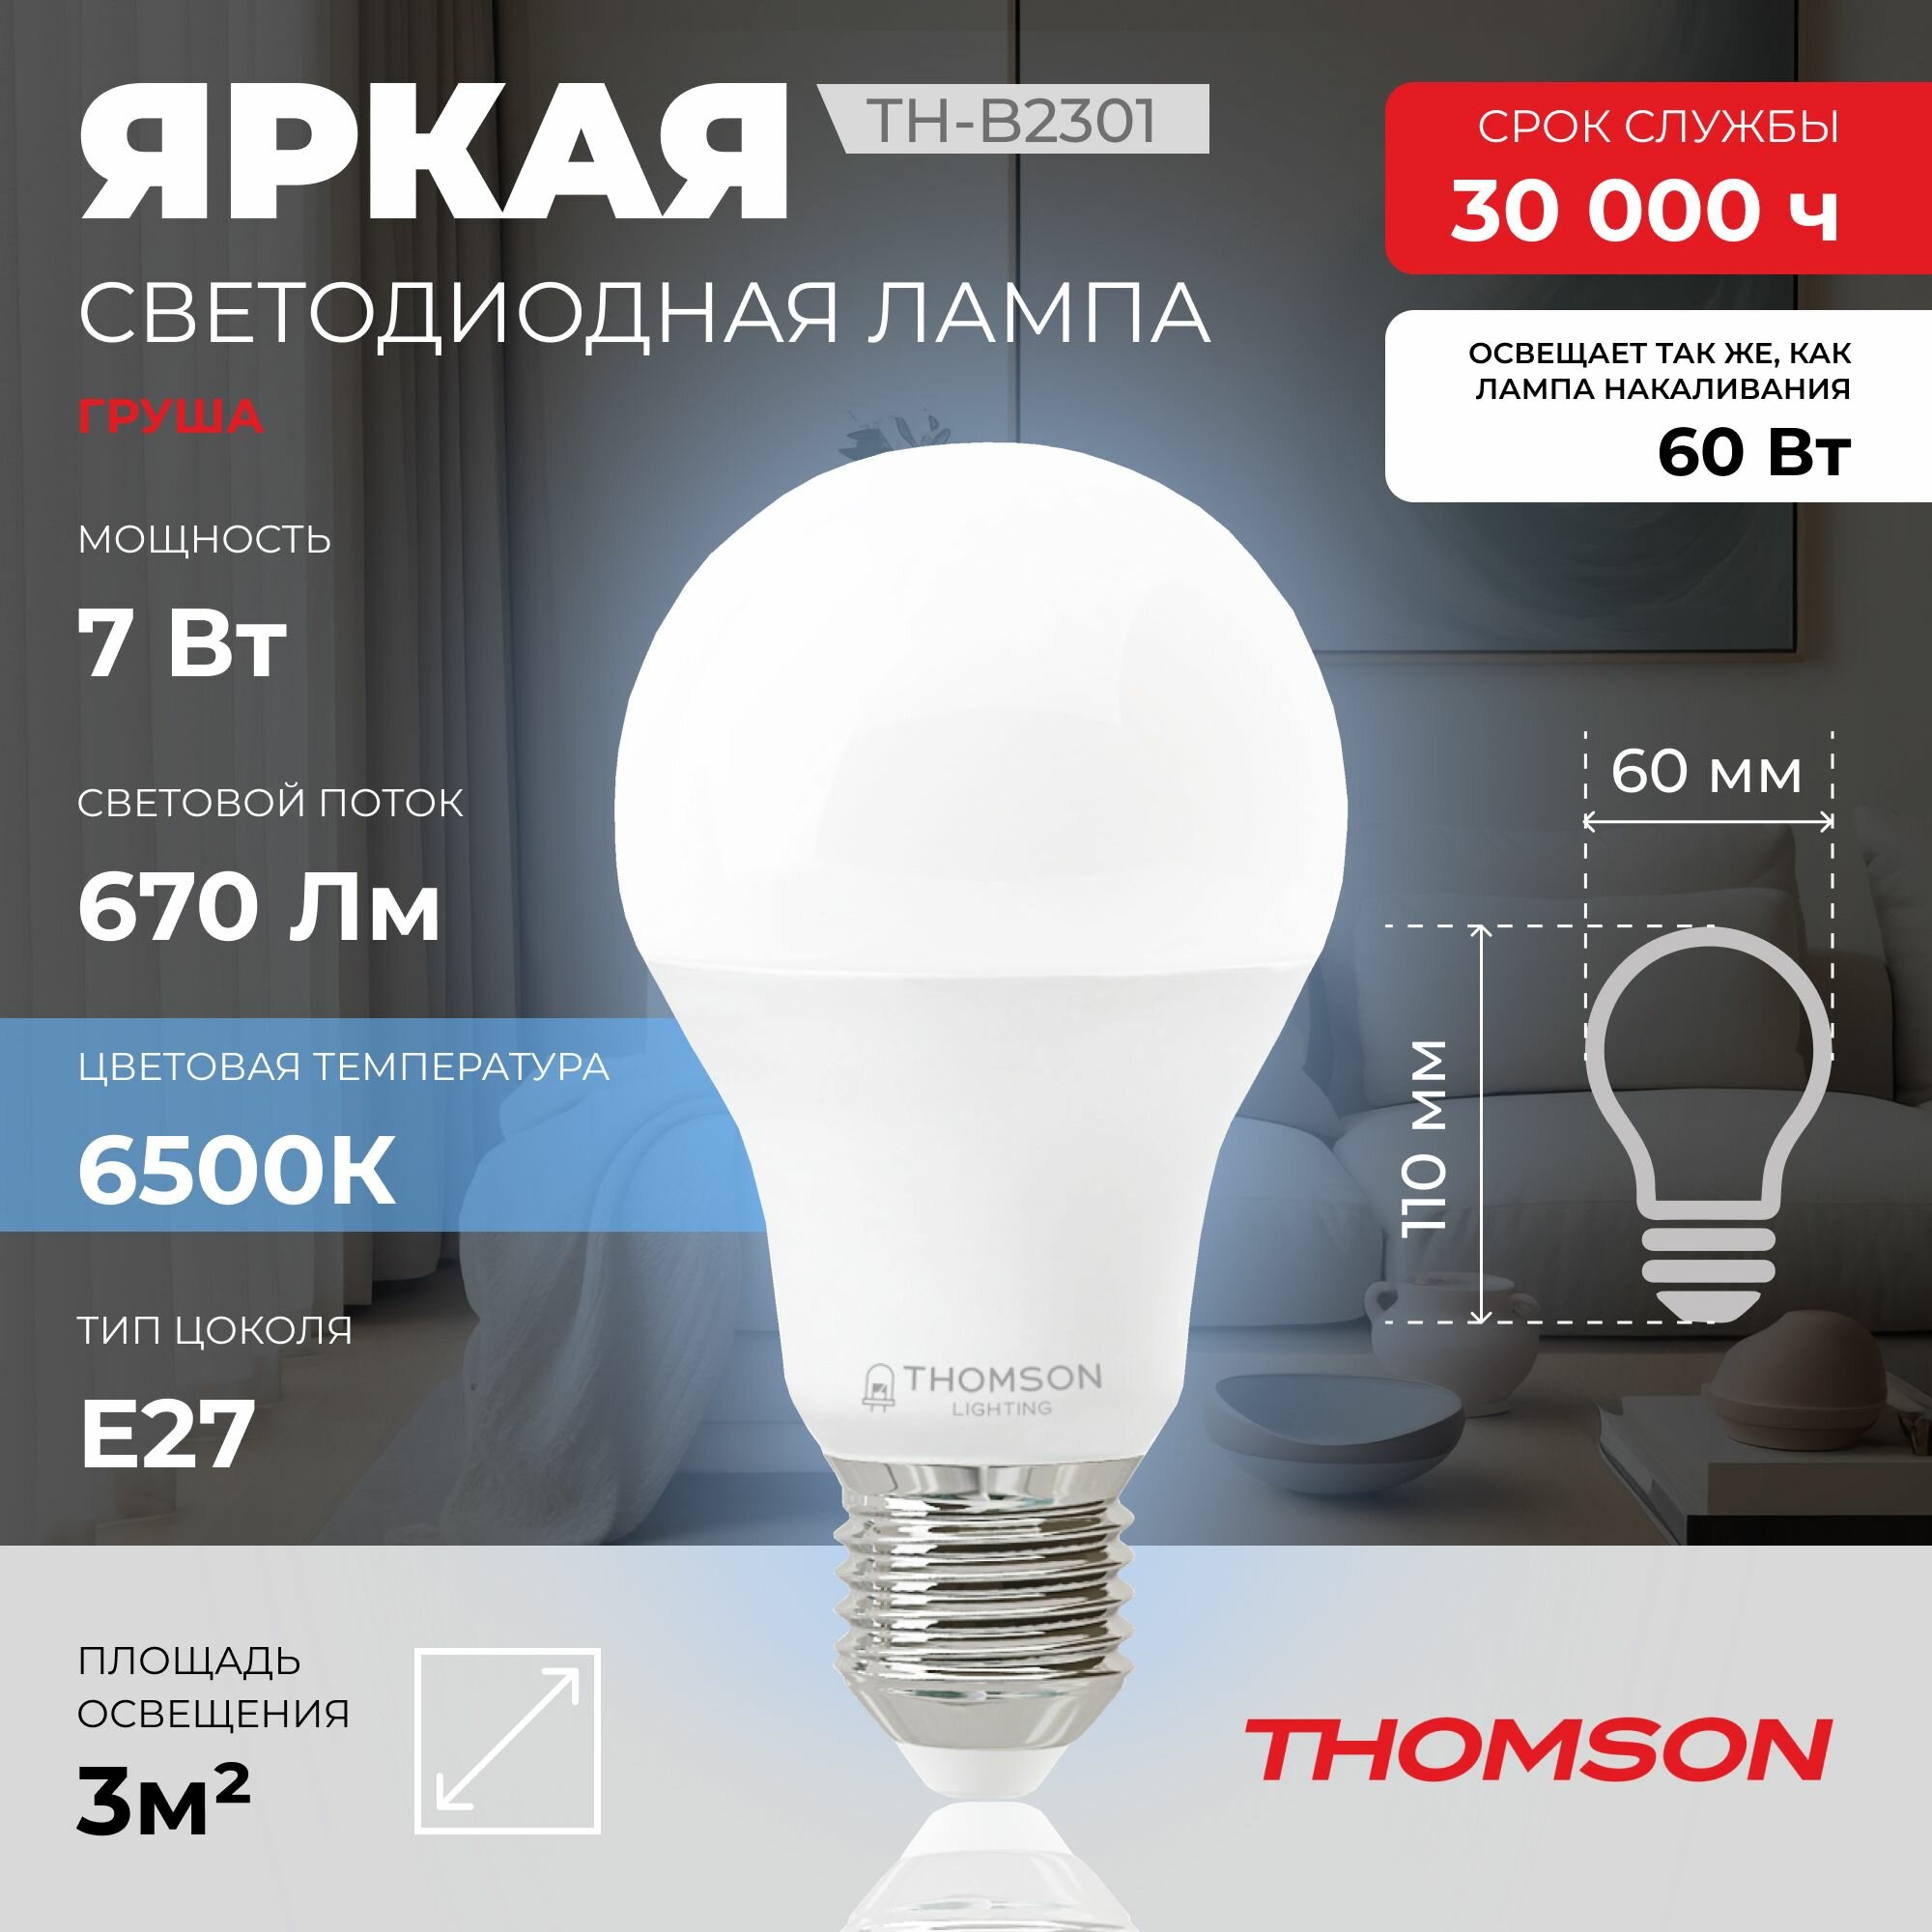 Лампочка Thomson TH-B2301 7 Вт, E27, 6500К, холодный белый свет